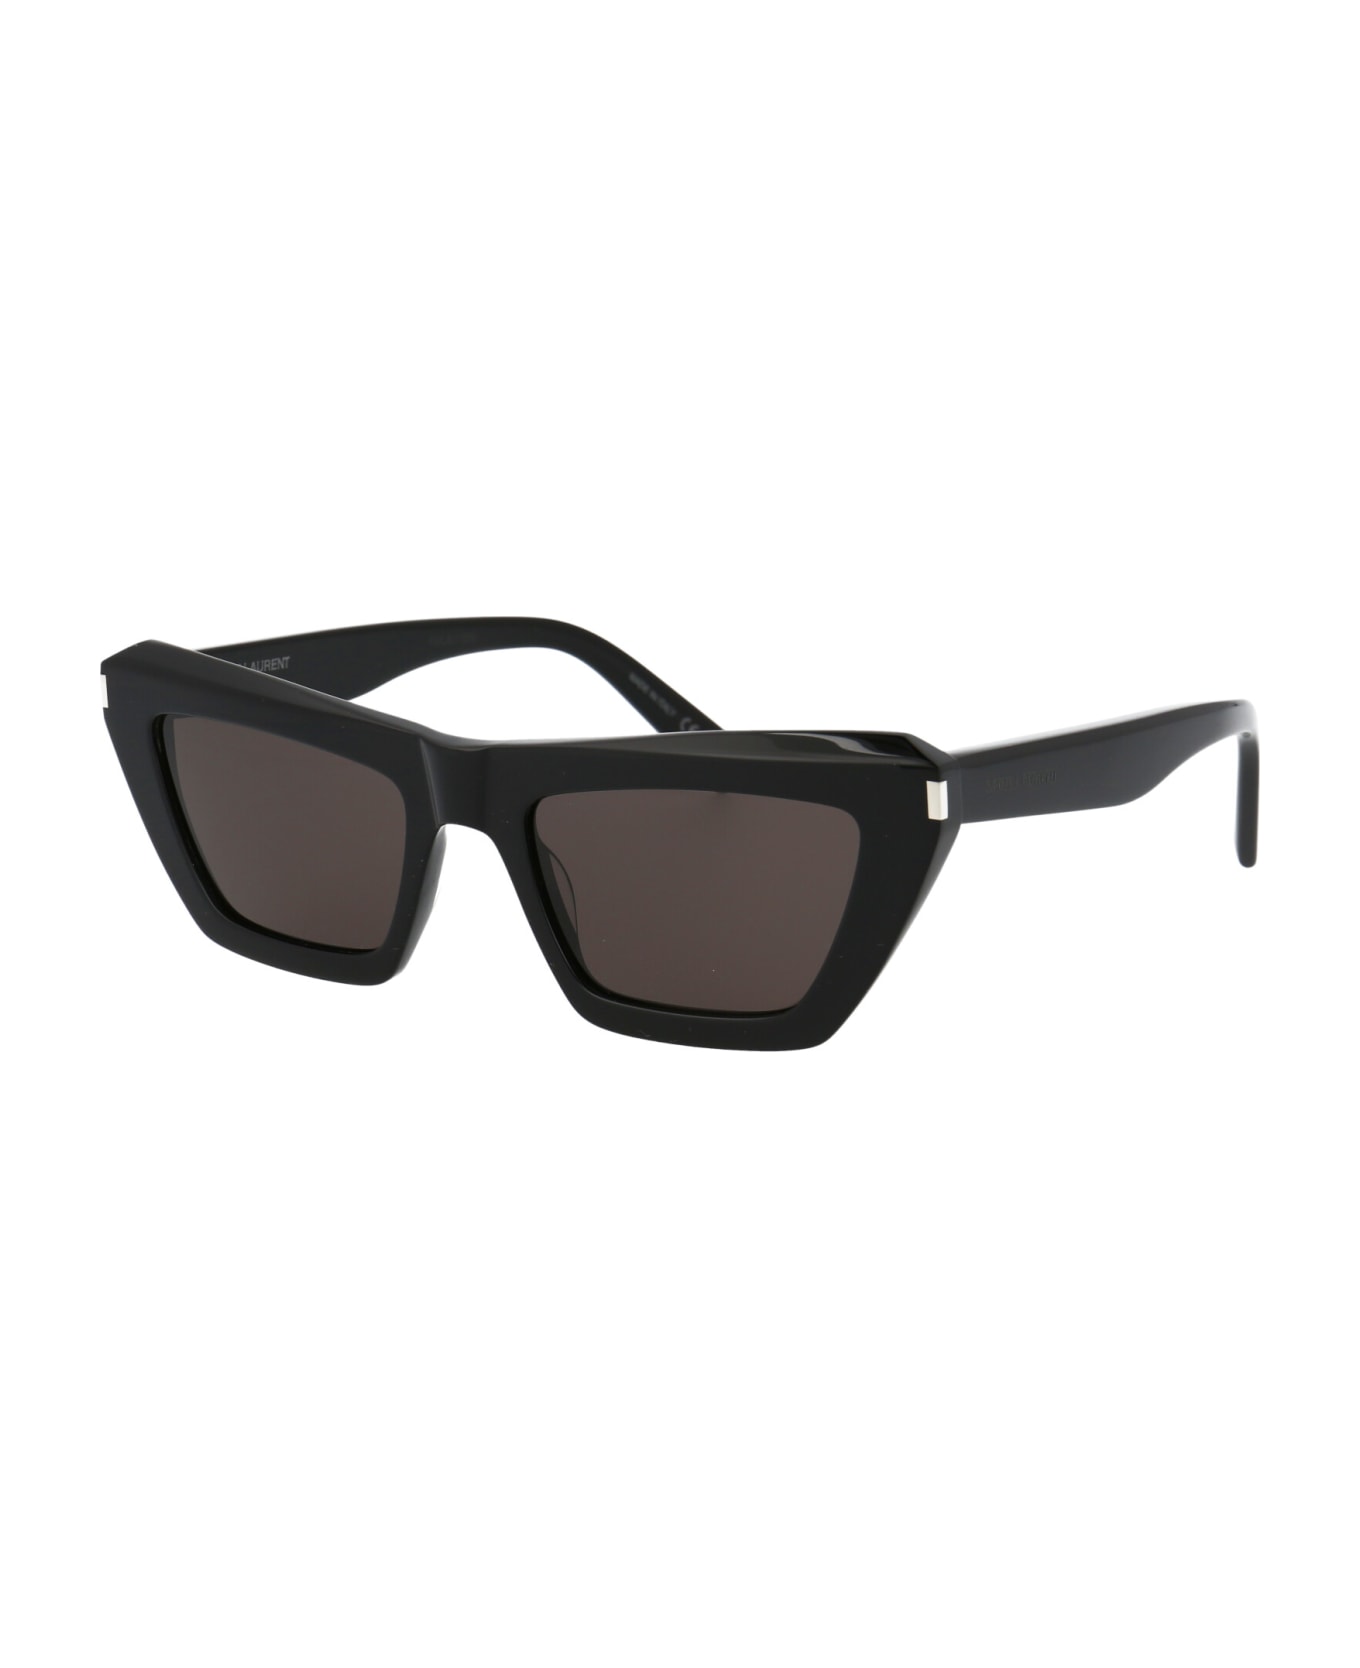 Saint Laurent Eyewear Sl 467 Sunglasses - 001 BLACK BLACK BLACK サングラス